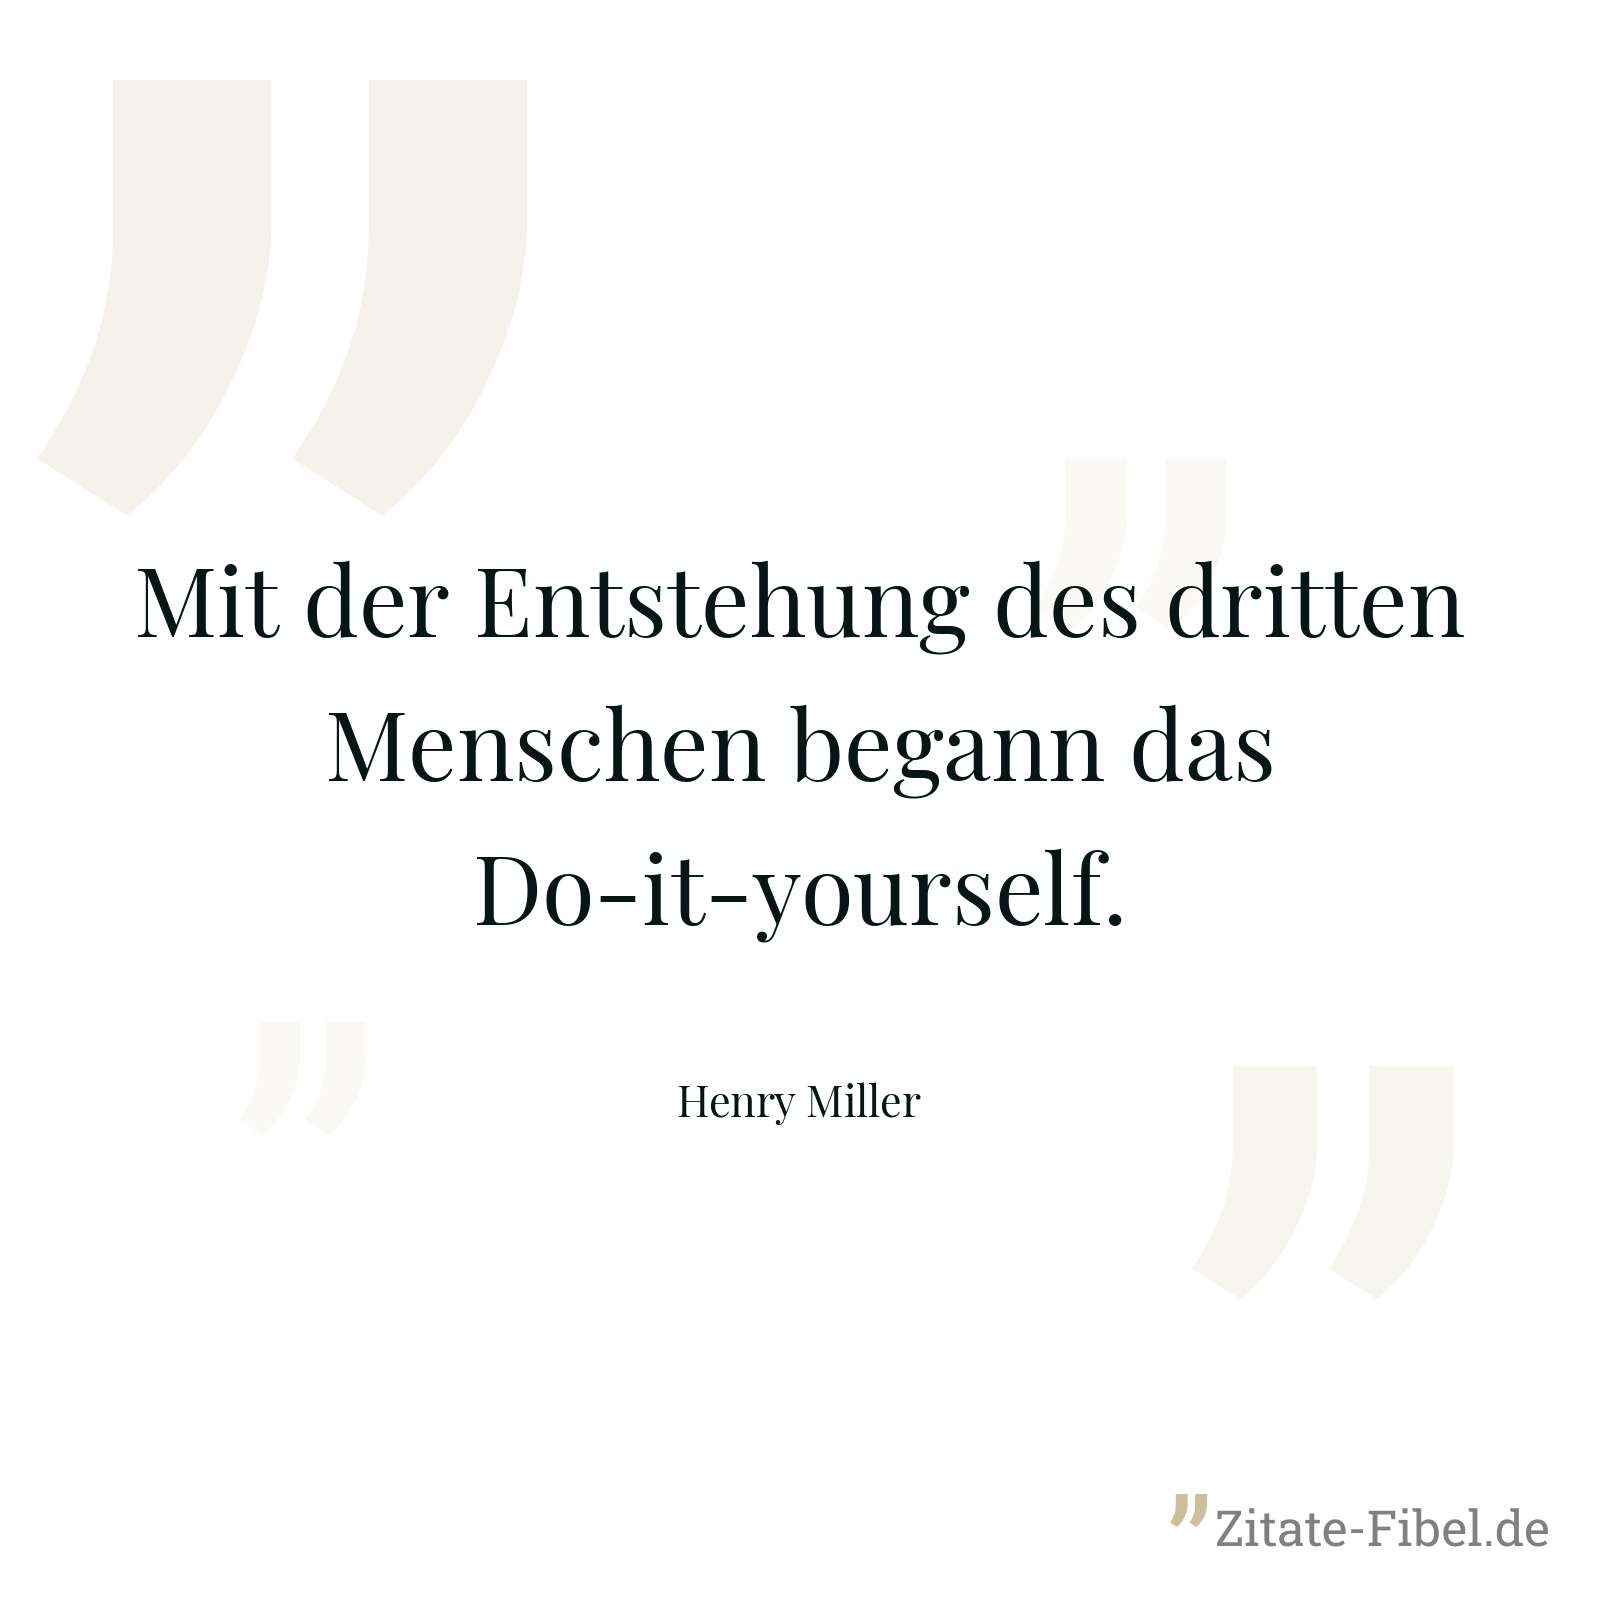 Mit der Entstehung des dritten Menschen begann das Do-it-yourself. - Henry Miller